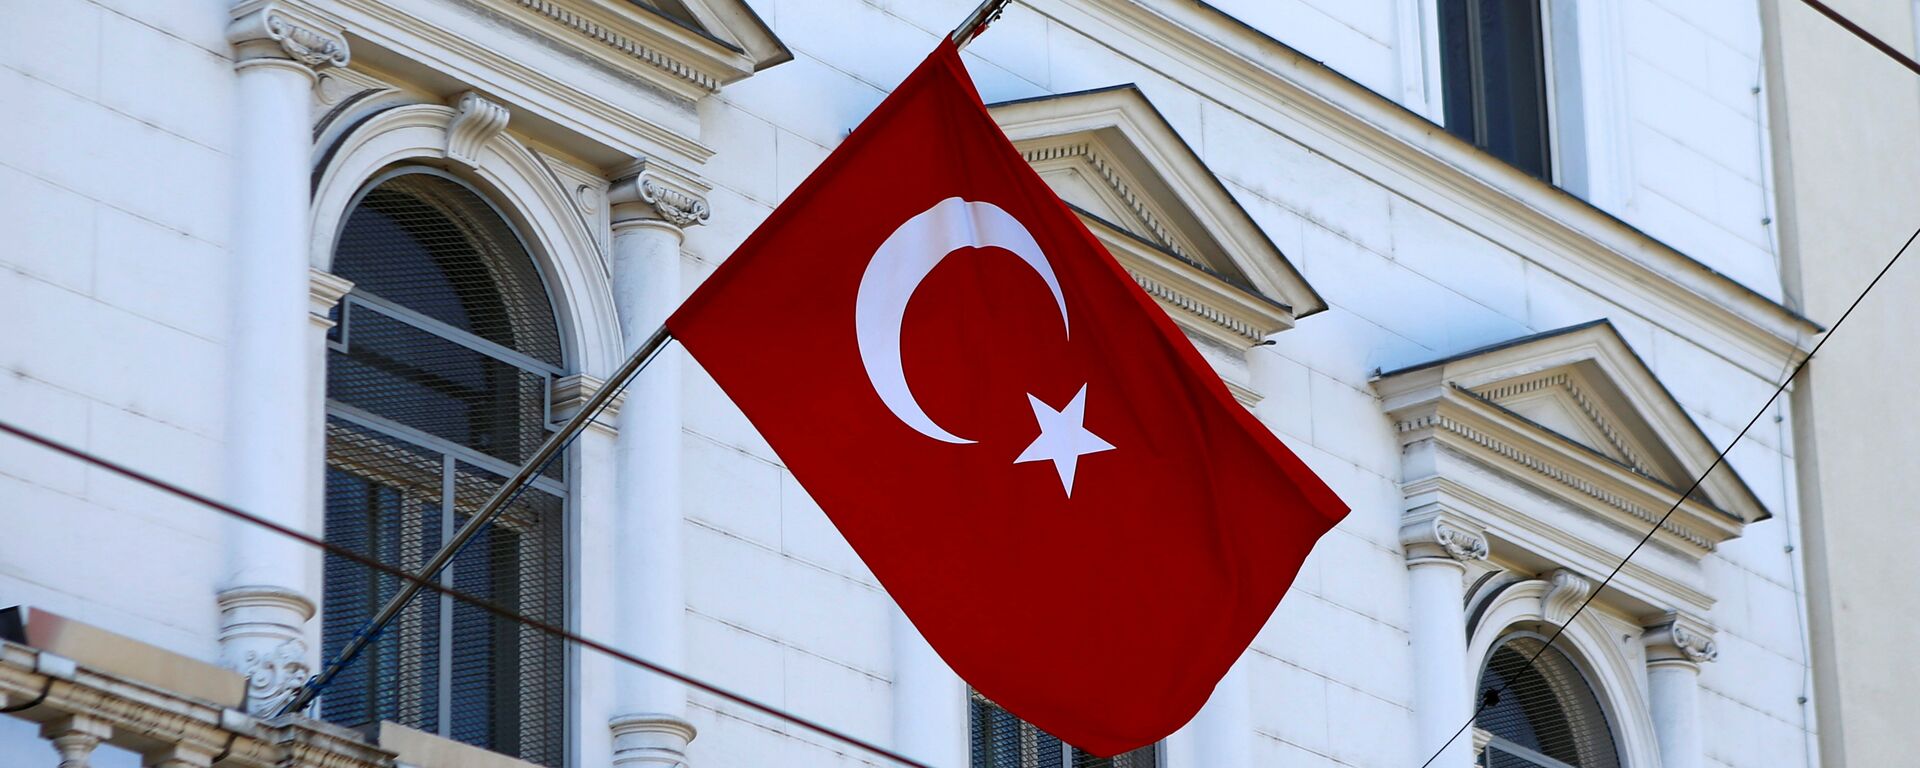 La bandera de Turquía - Sputnik Mundo, 1920, 23.03.2021